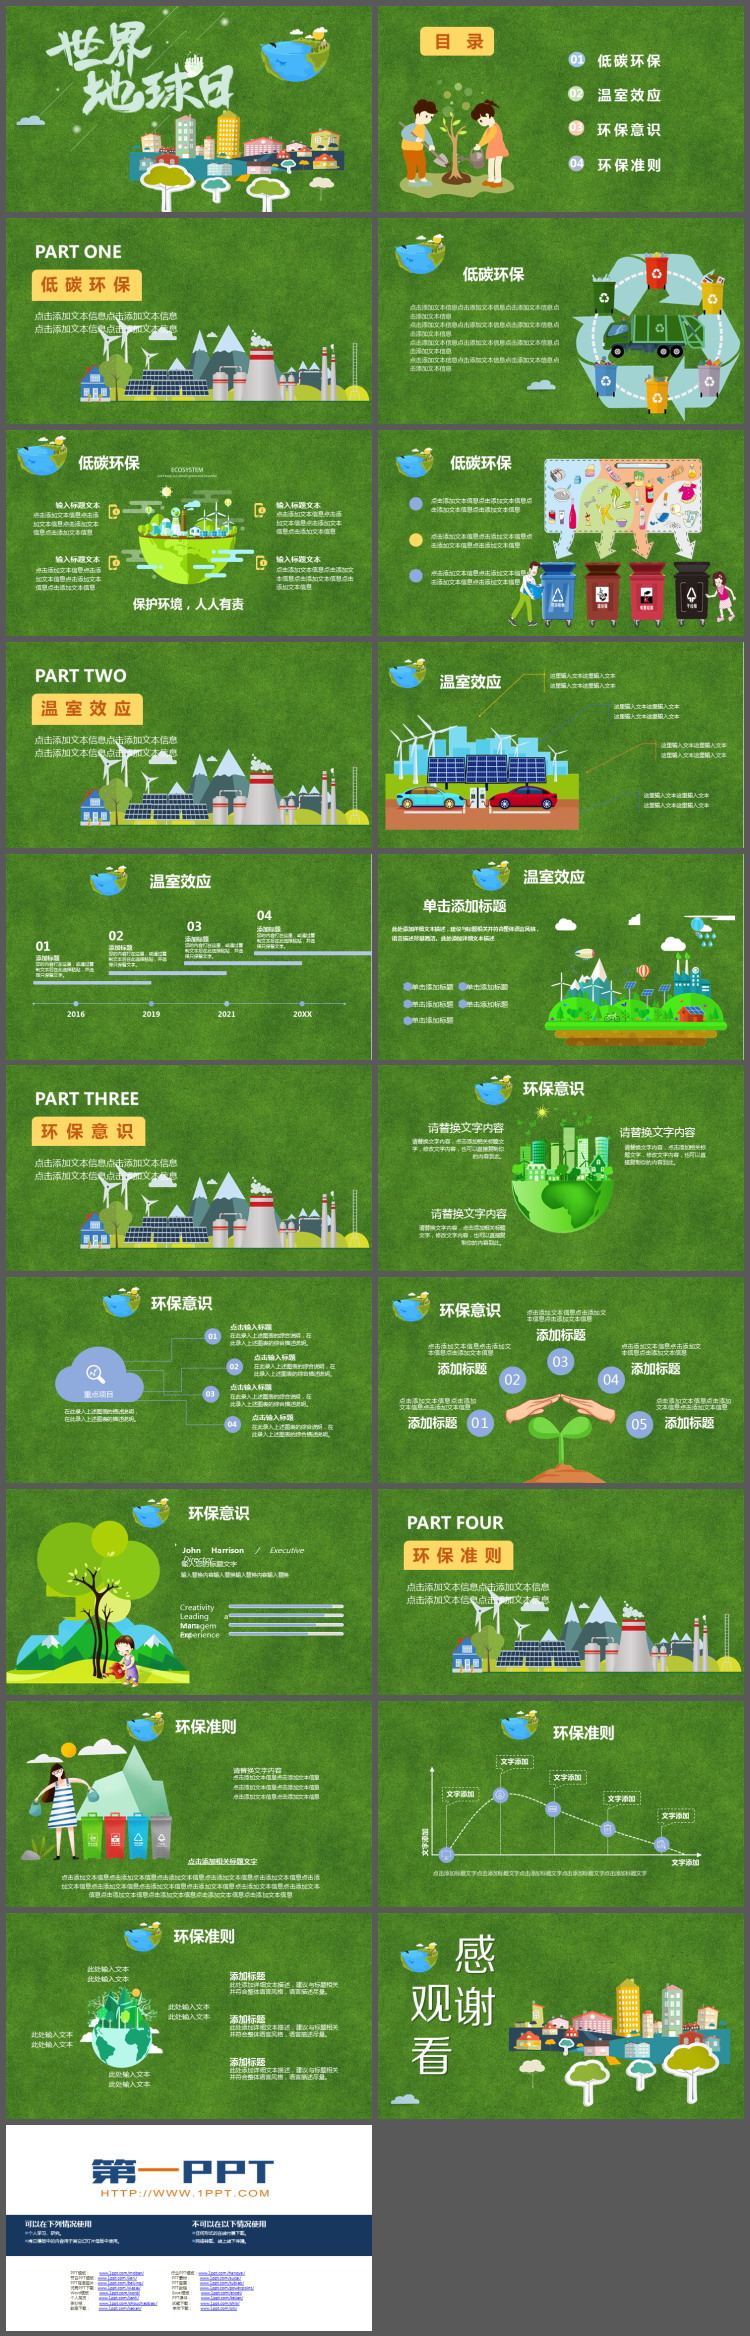 绿色草地卡通城市建筑背景的世界地球日PPT模板